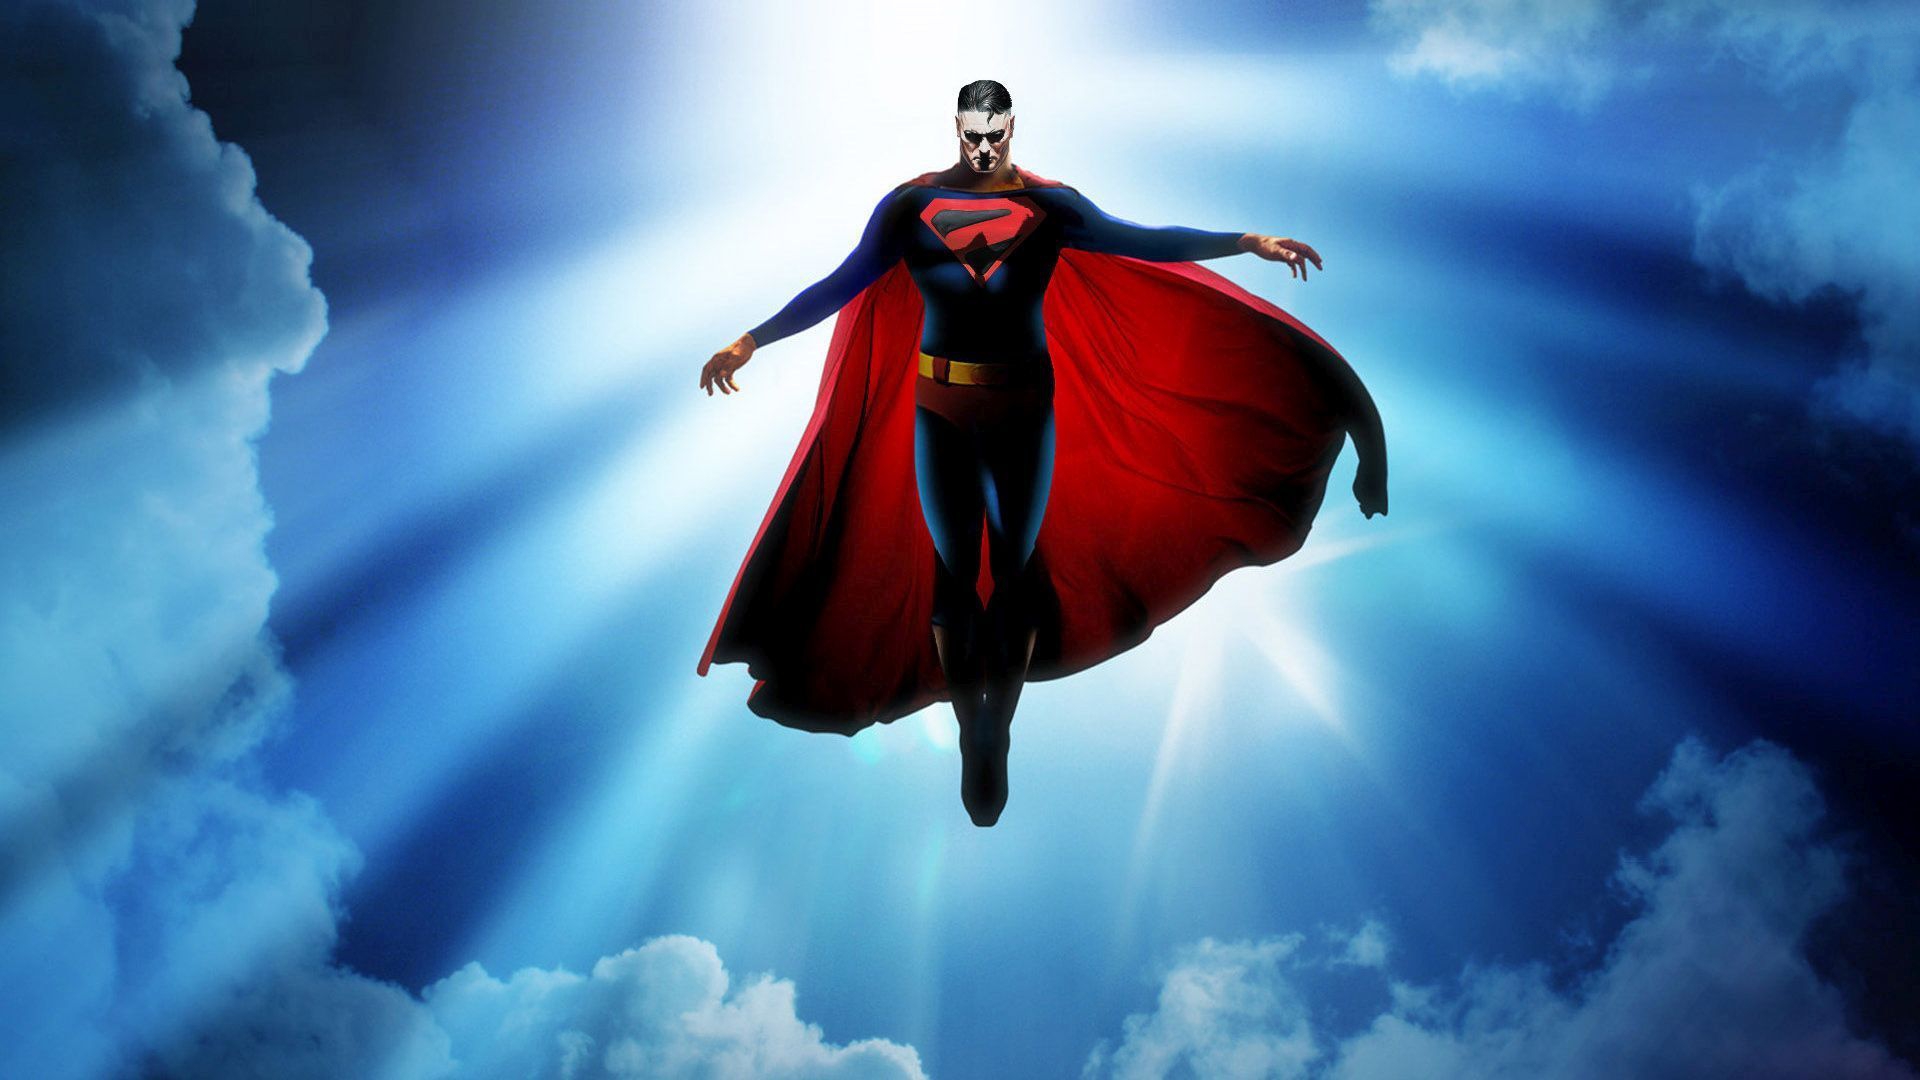 fond d'écran superman hd pour android,superman,super héros,personnage fictif,ciel,ligue de justice